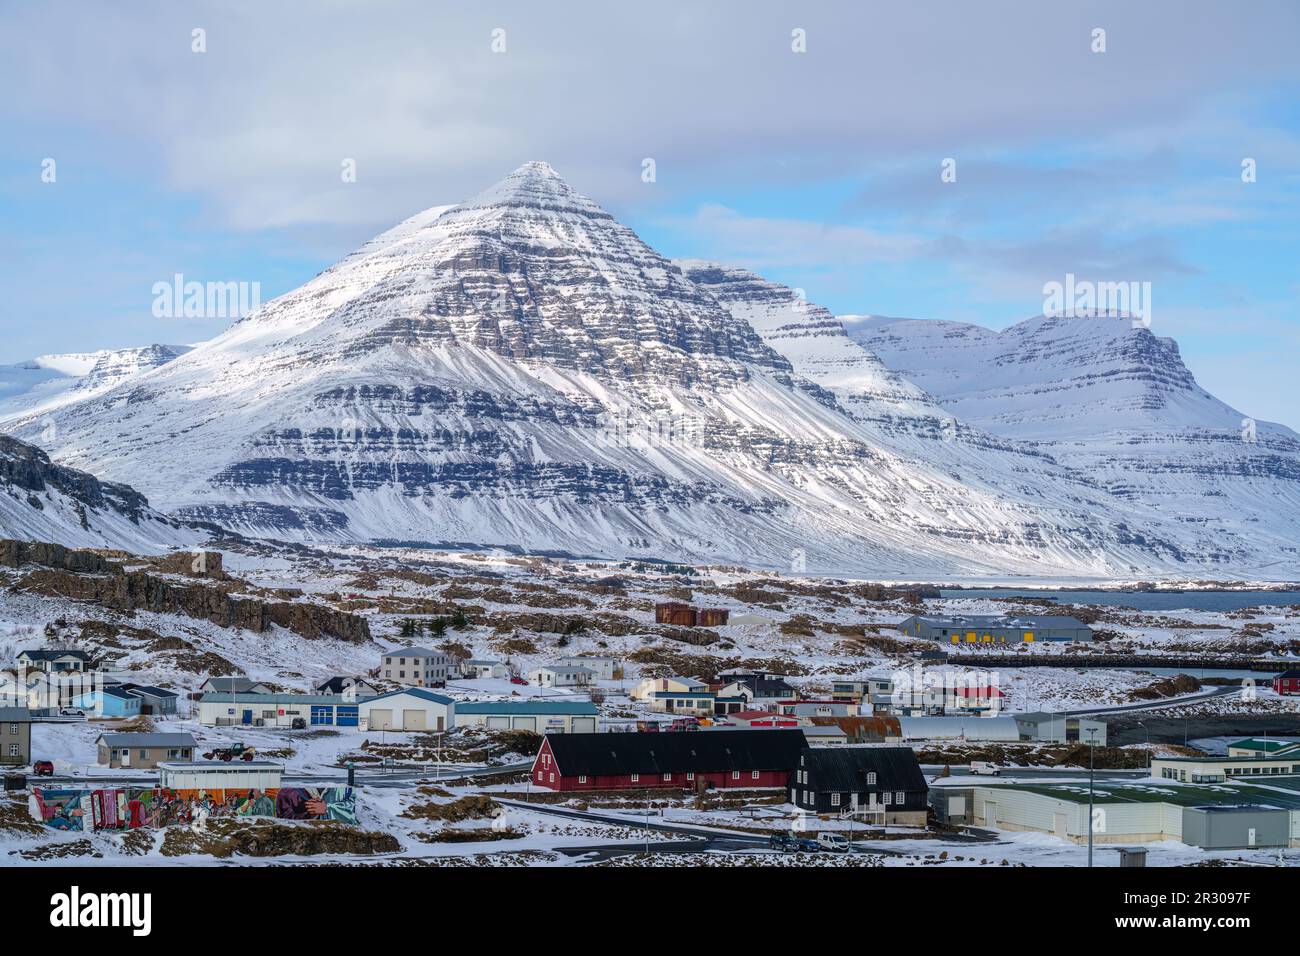 Djúpivogur eine kleine Fischerstadt im östlichen Teil von Island (Austurland) mit einem basaltpyramidenförmigen Berg namens Búlandstindur. Stockfoto